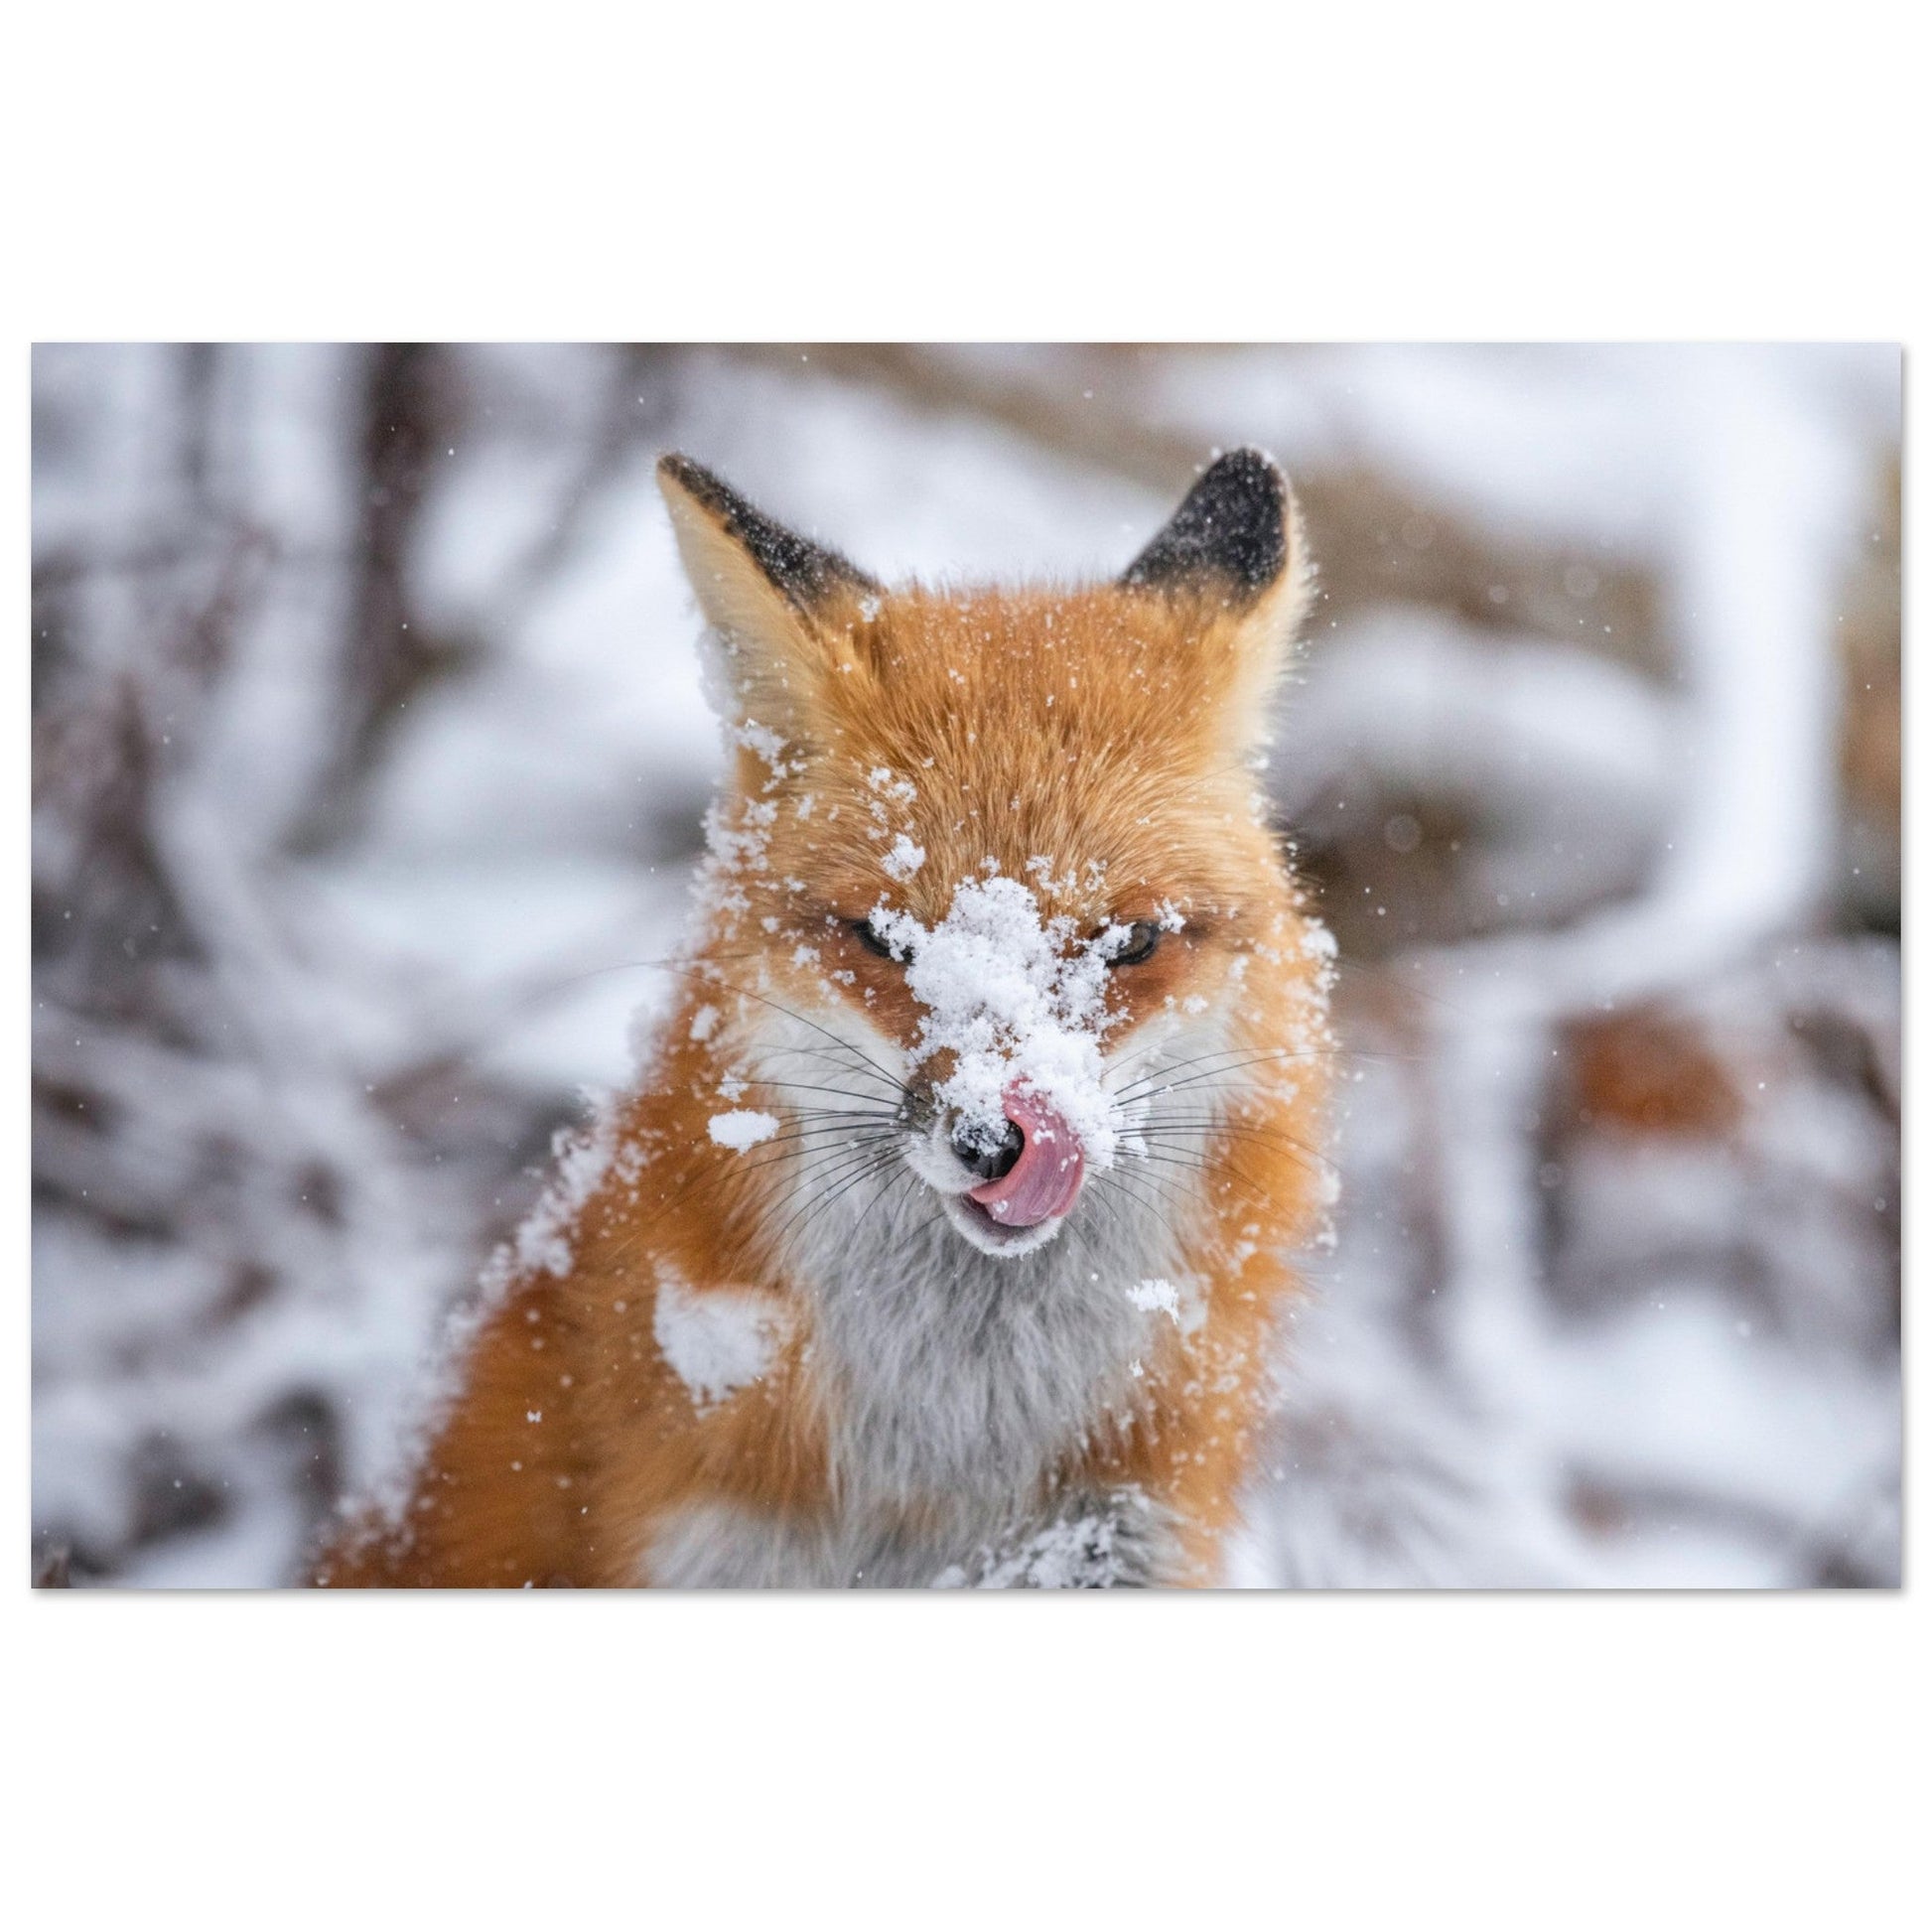 Vente Photo d'un renard dans la neige #1 - Tableau photo alu montagne